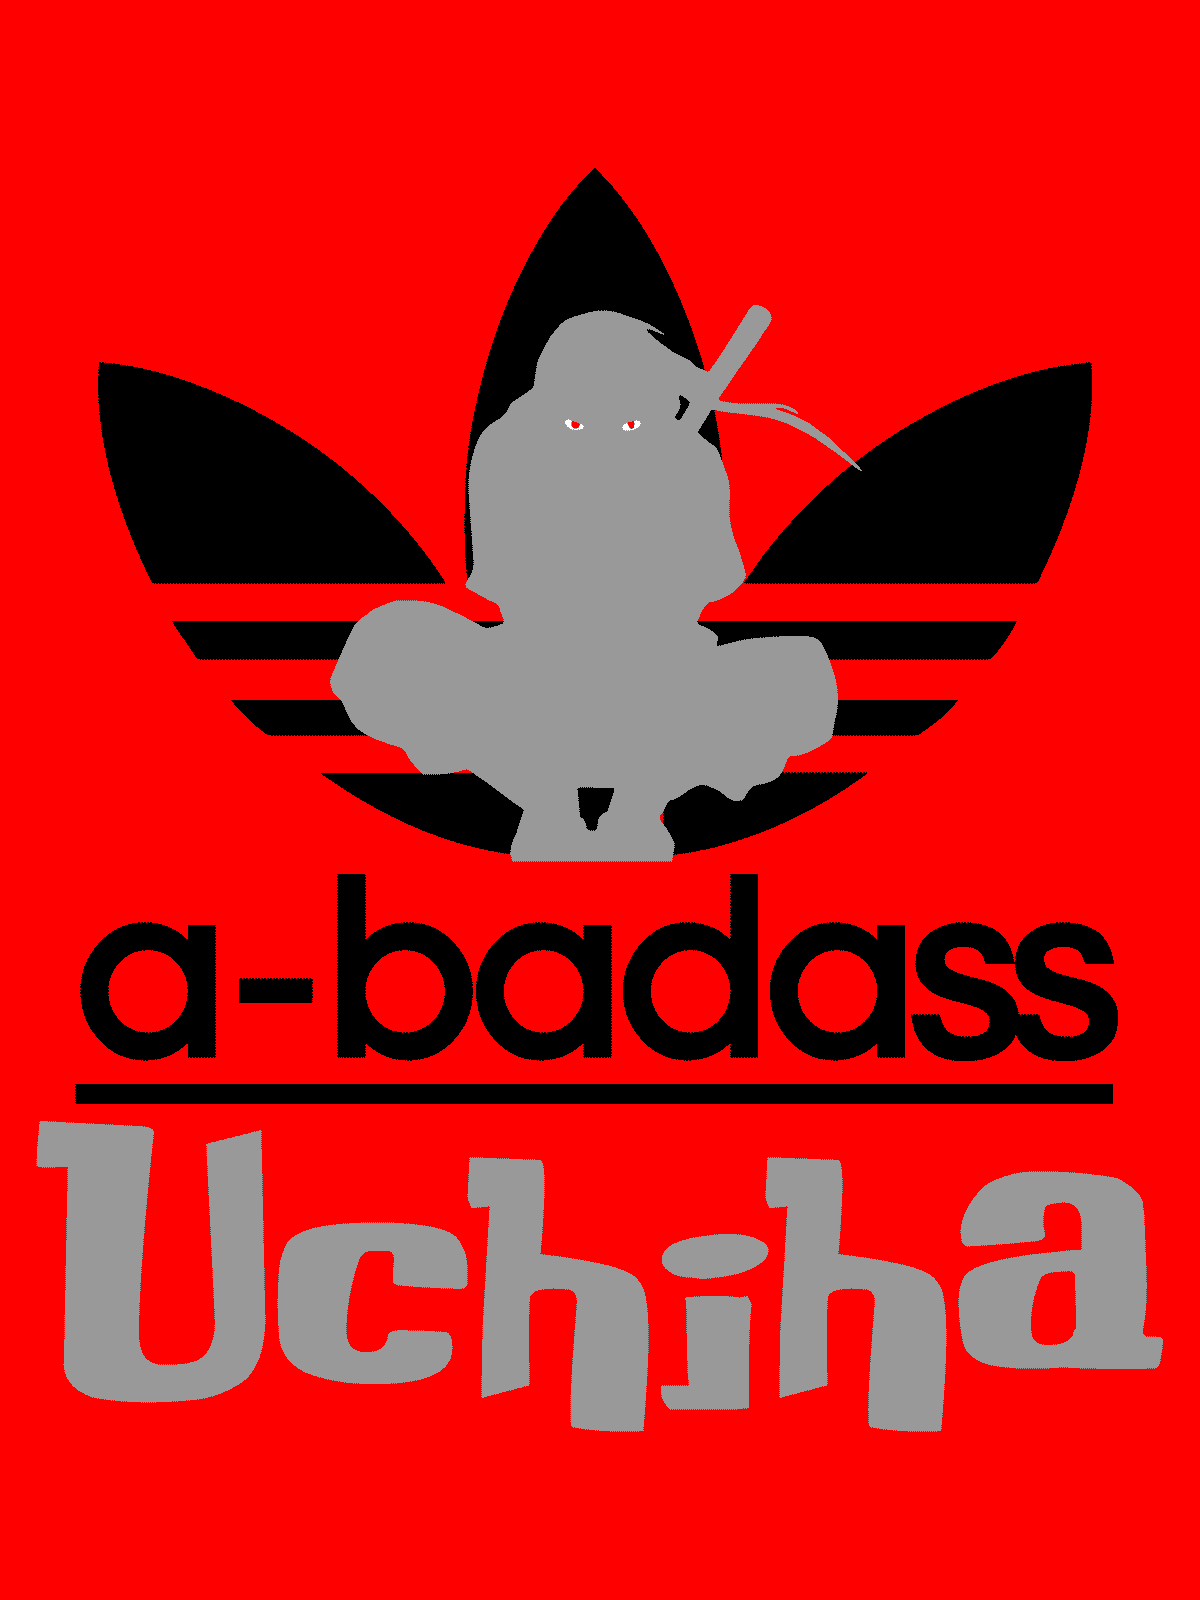 Abadass Uchiha